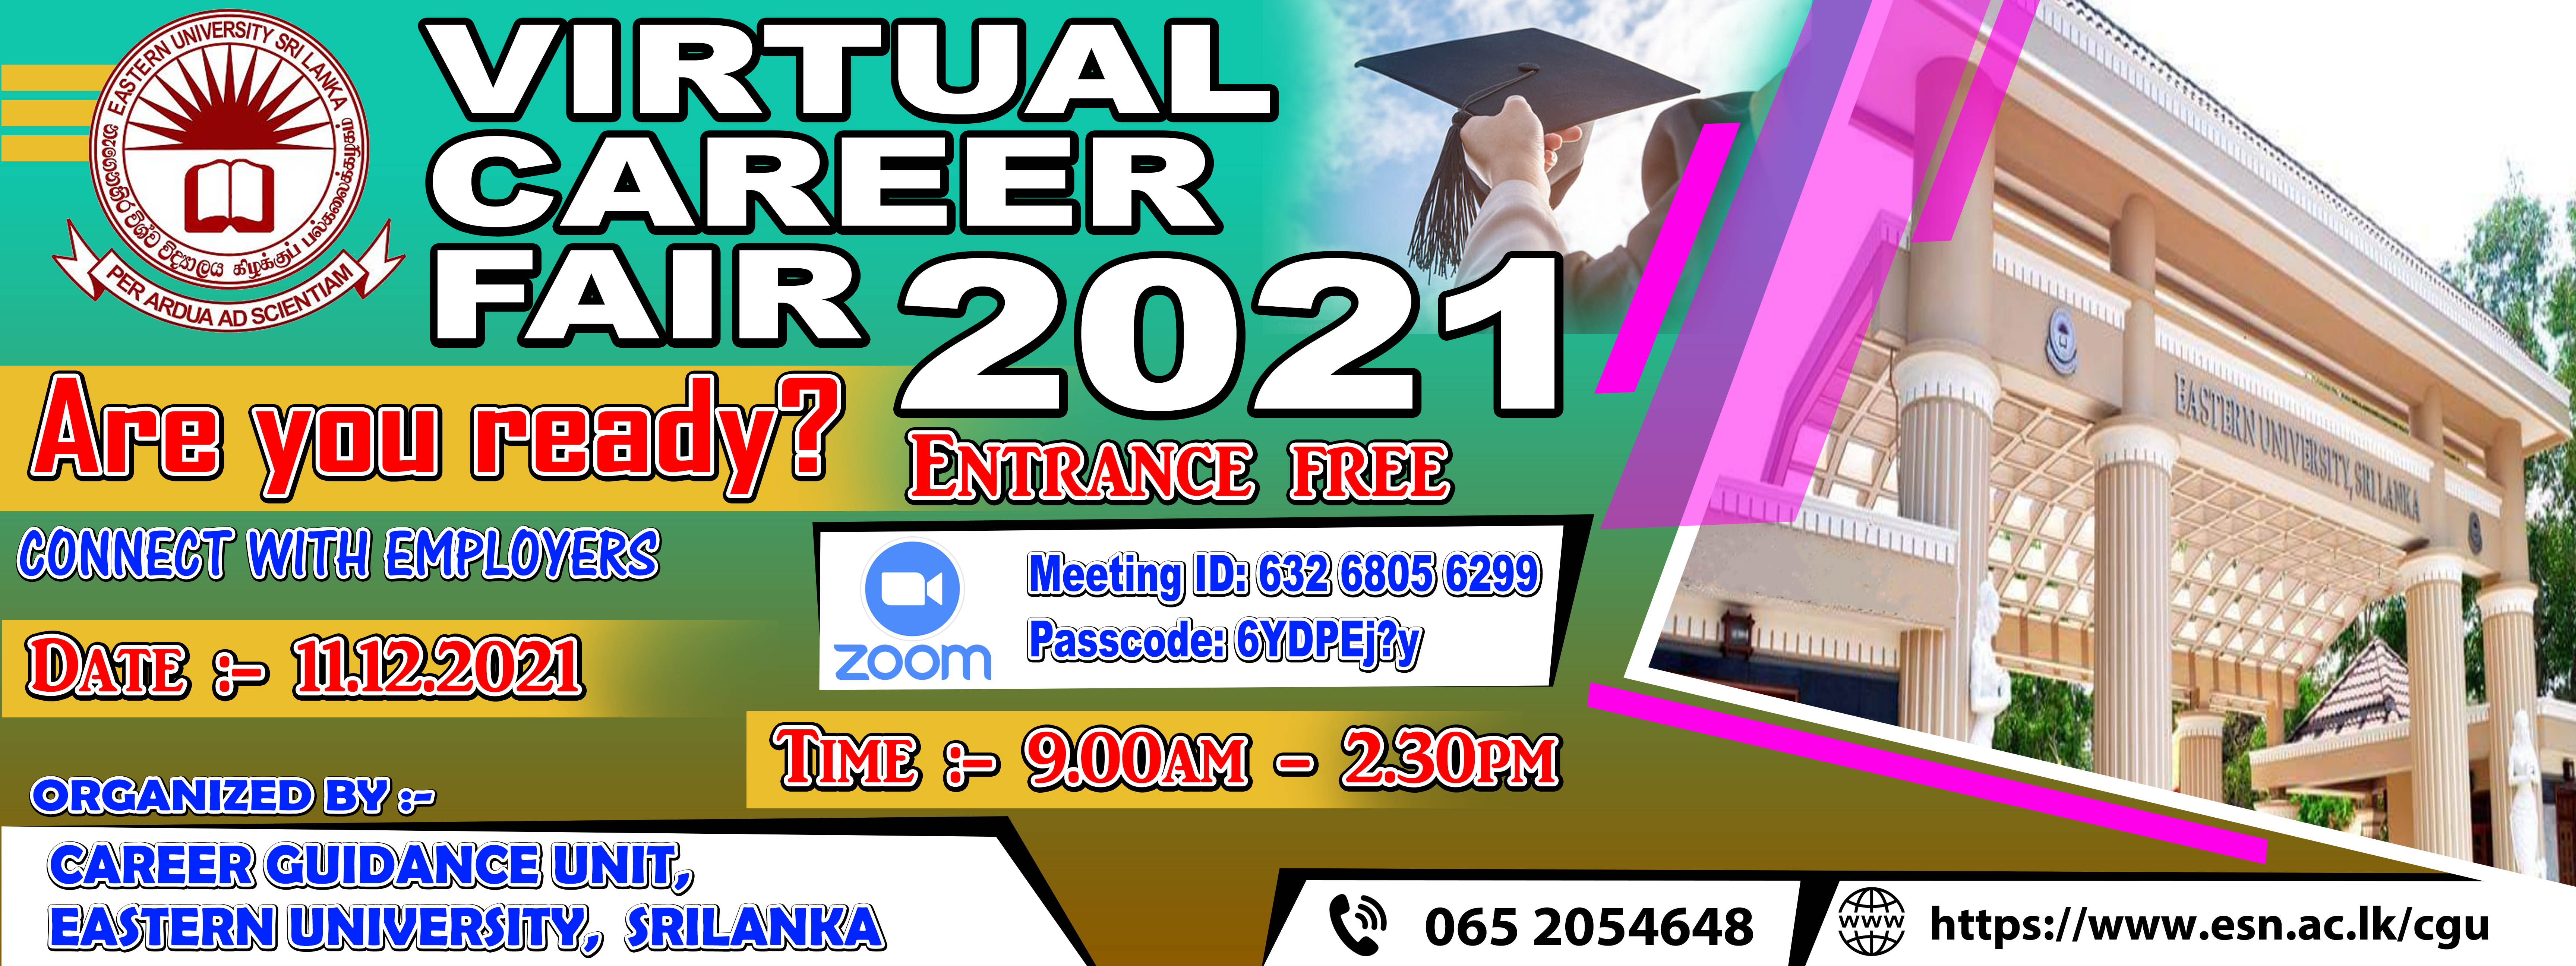 Banner - Virtual Career Fair 2021_0.jpg